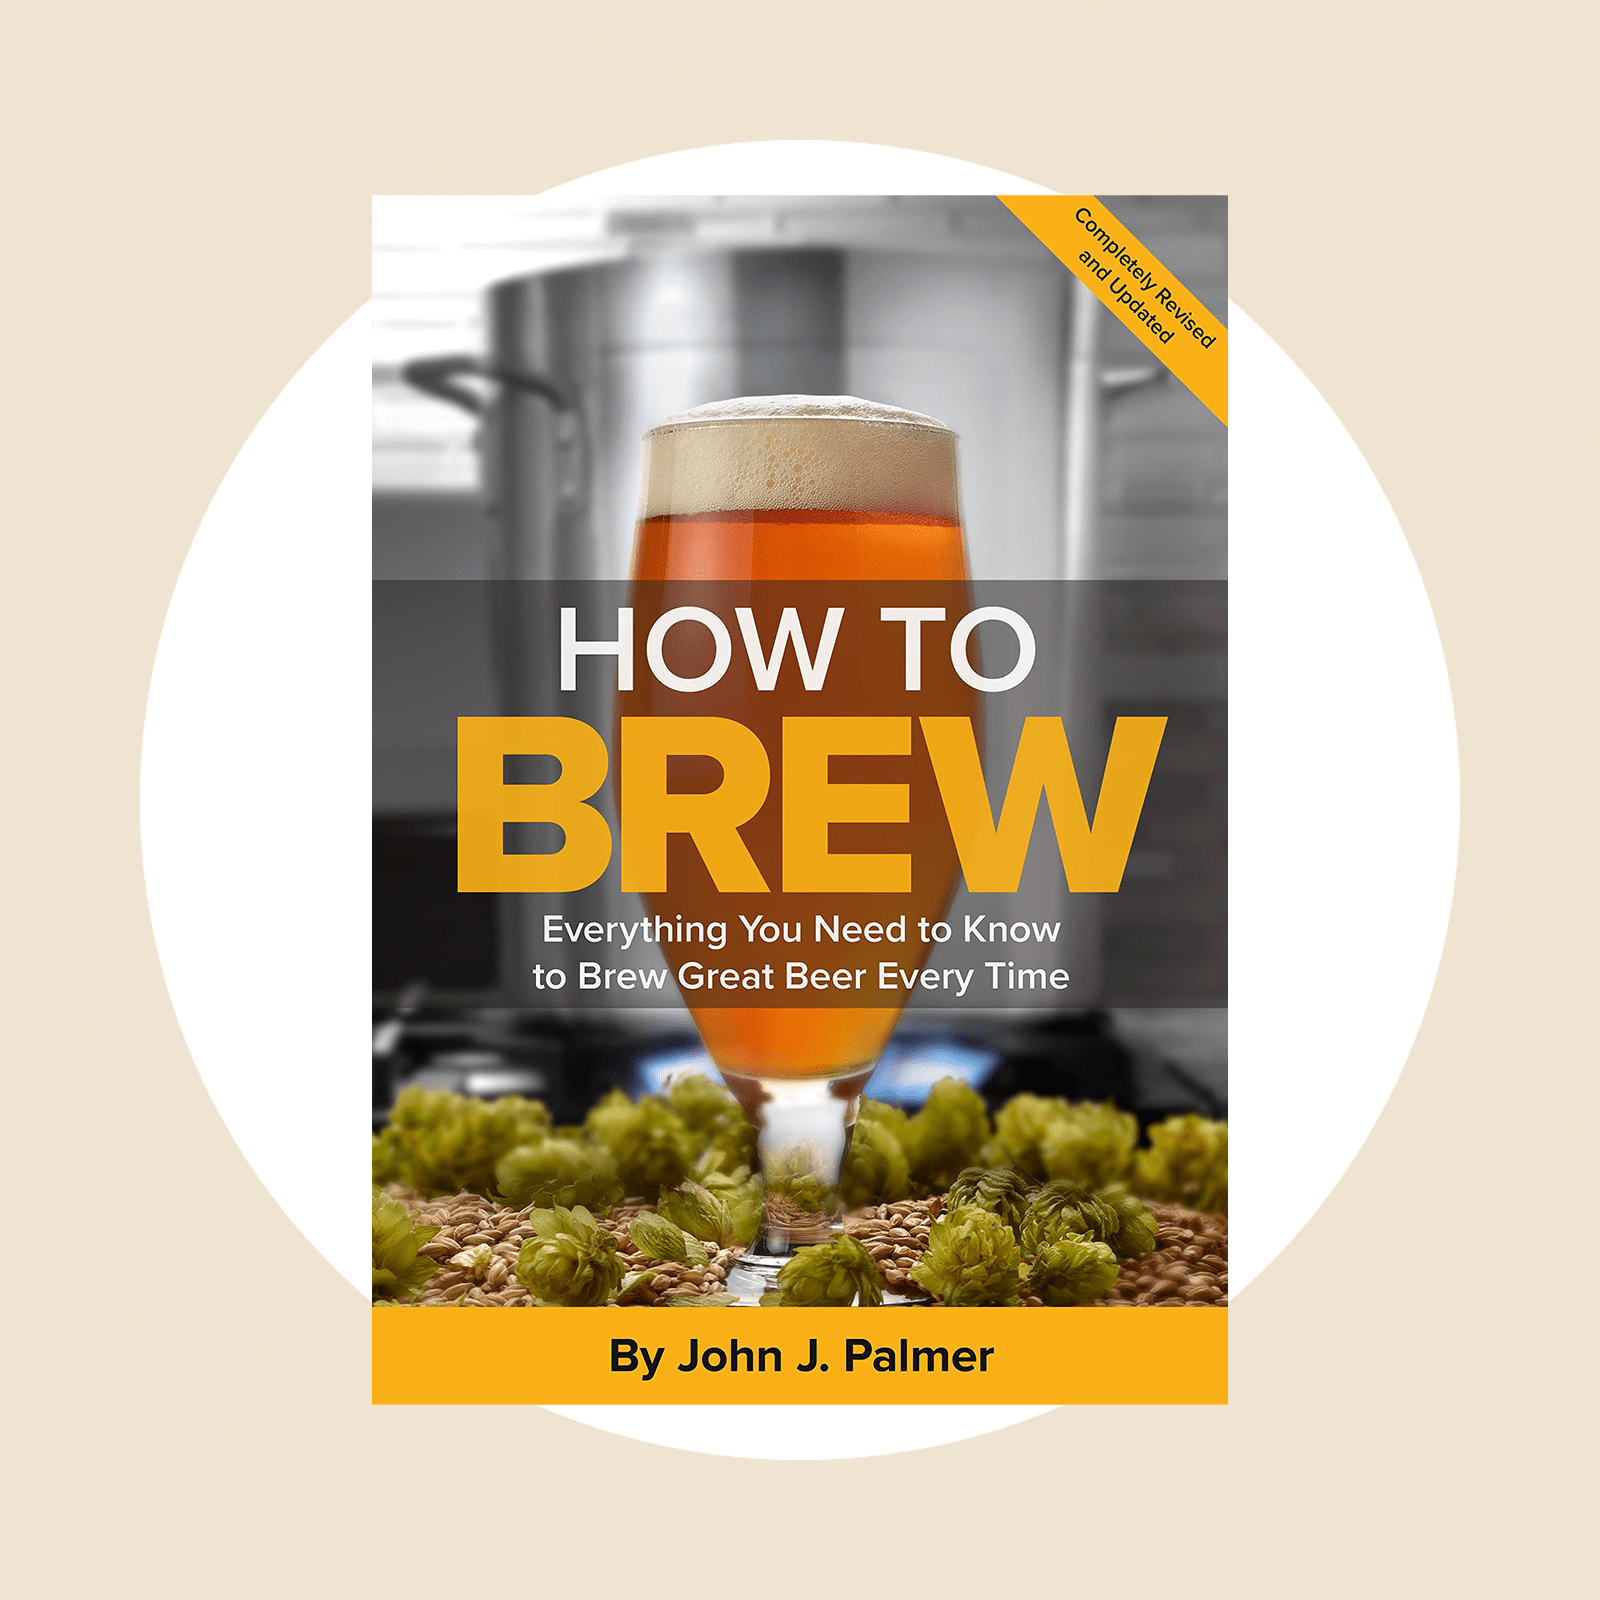 How To Brew Ecomm Via Amazon.com